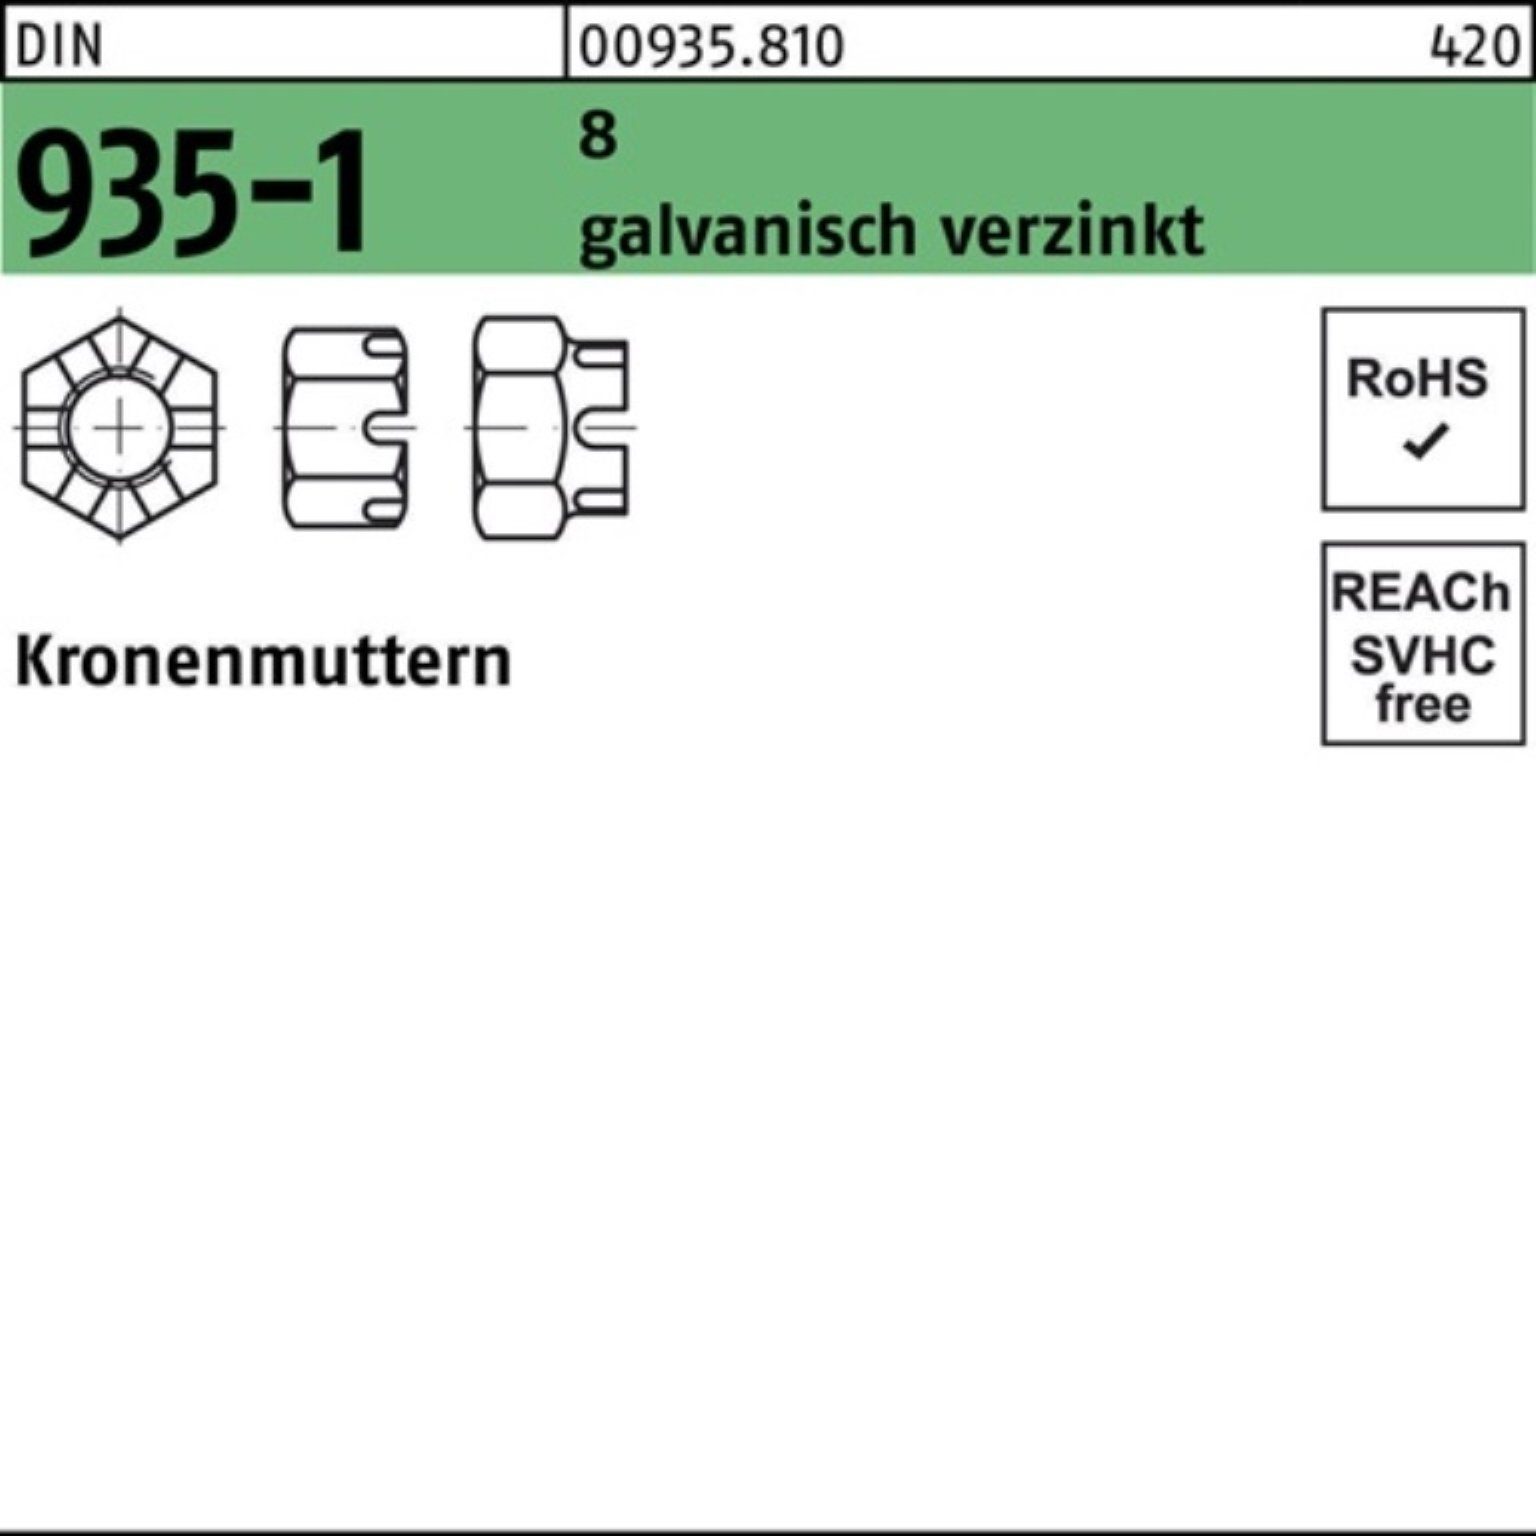 Reyher Kronenmutter 100er Stück M8 100 8 DIN galv.verz. Pack Kronenmutter 935-1 935-1 DIN